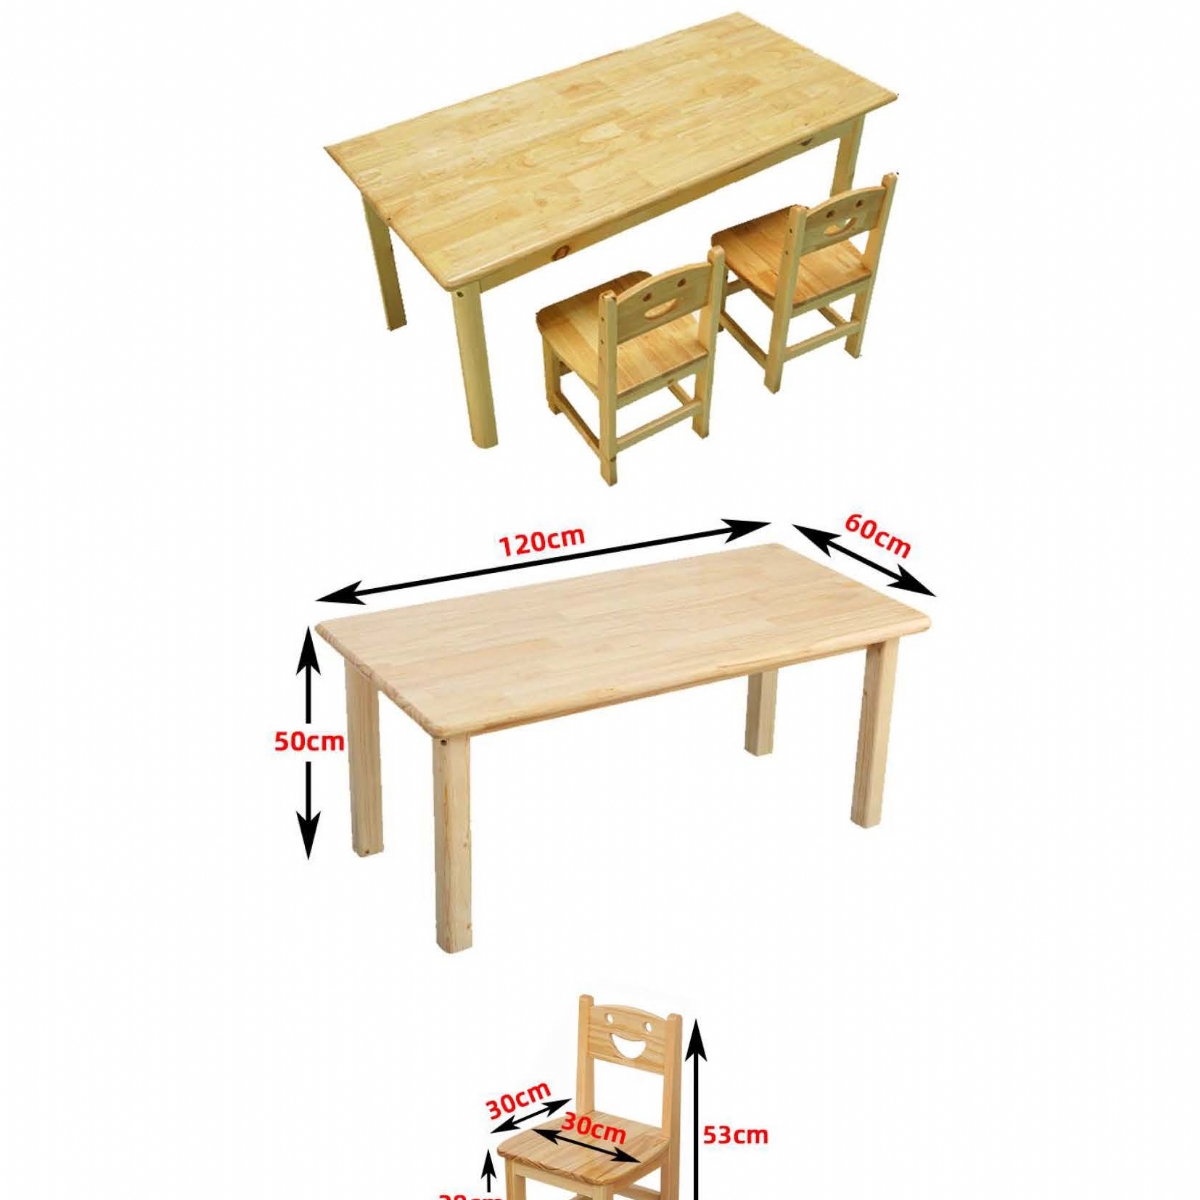 测查用桌子规格长120cm宽60cm高50cm